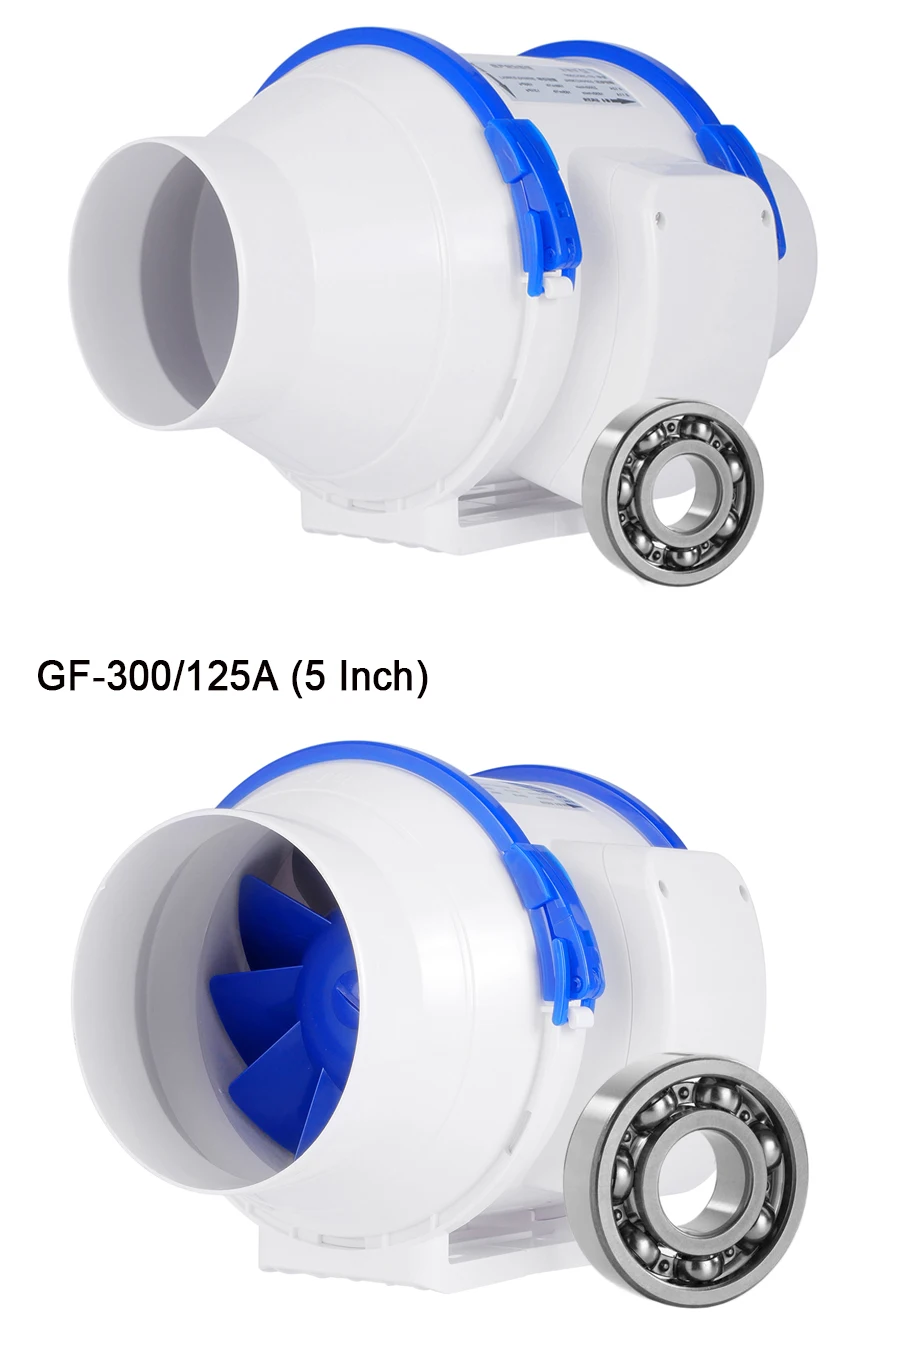 Hon& Guan 4 ''~ 8'' домашний бесшумный встроенный канальный вентилятор с сильной вентиляционной системой вытяжной вентилятор для кухни ванной комнаты; 111 CFM~ 470 CFM